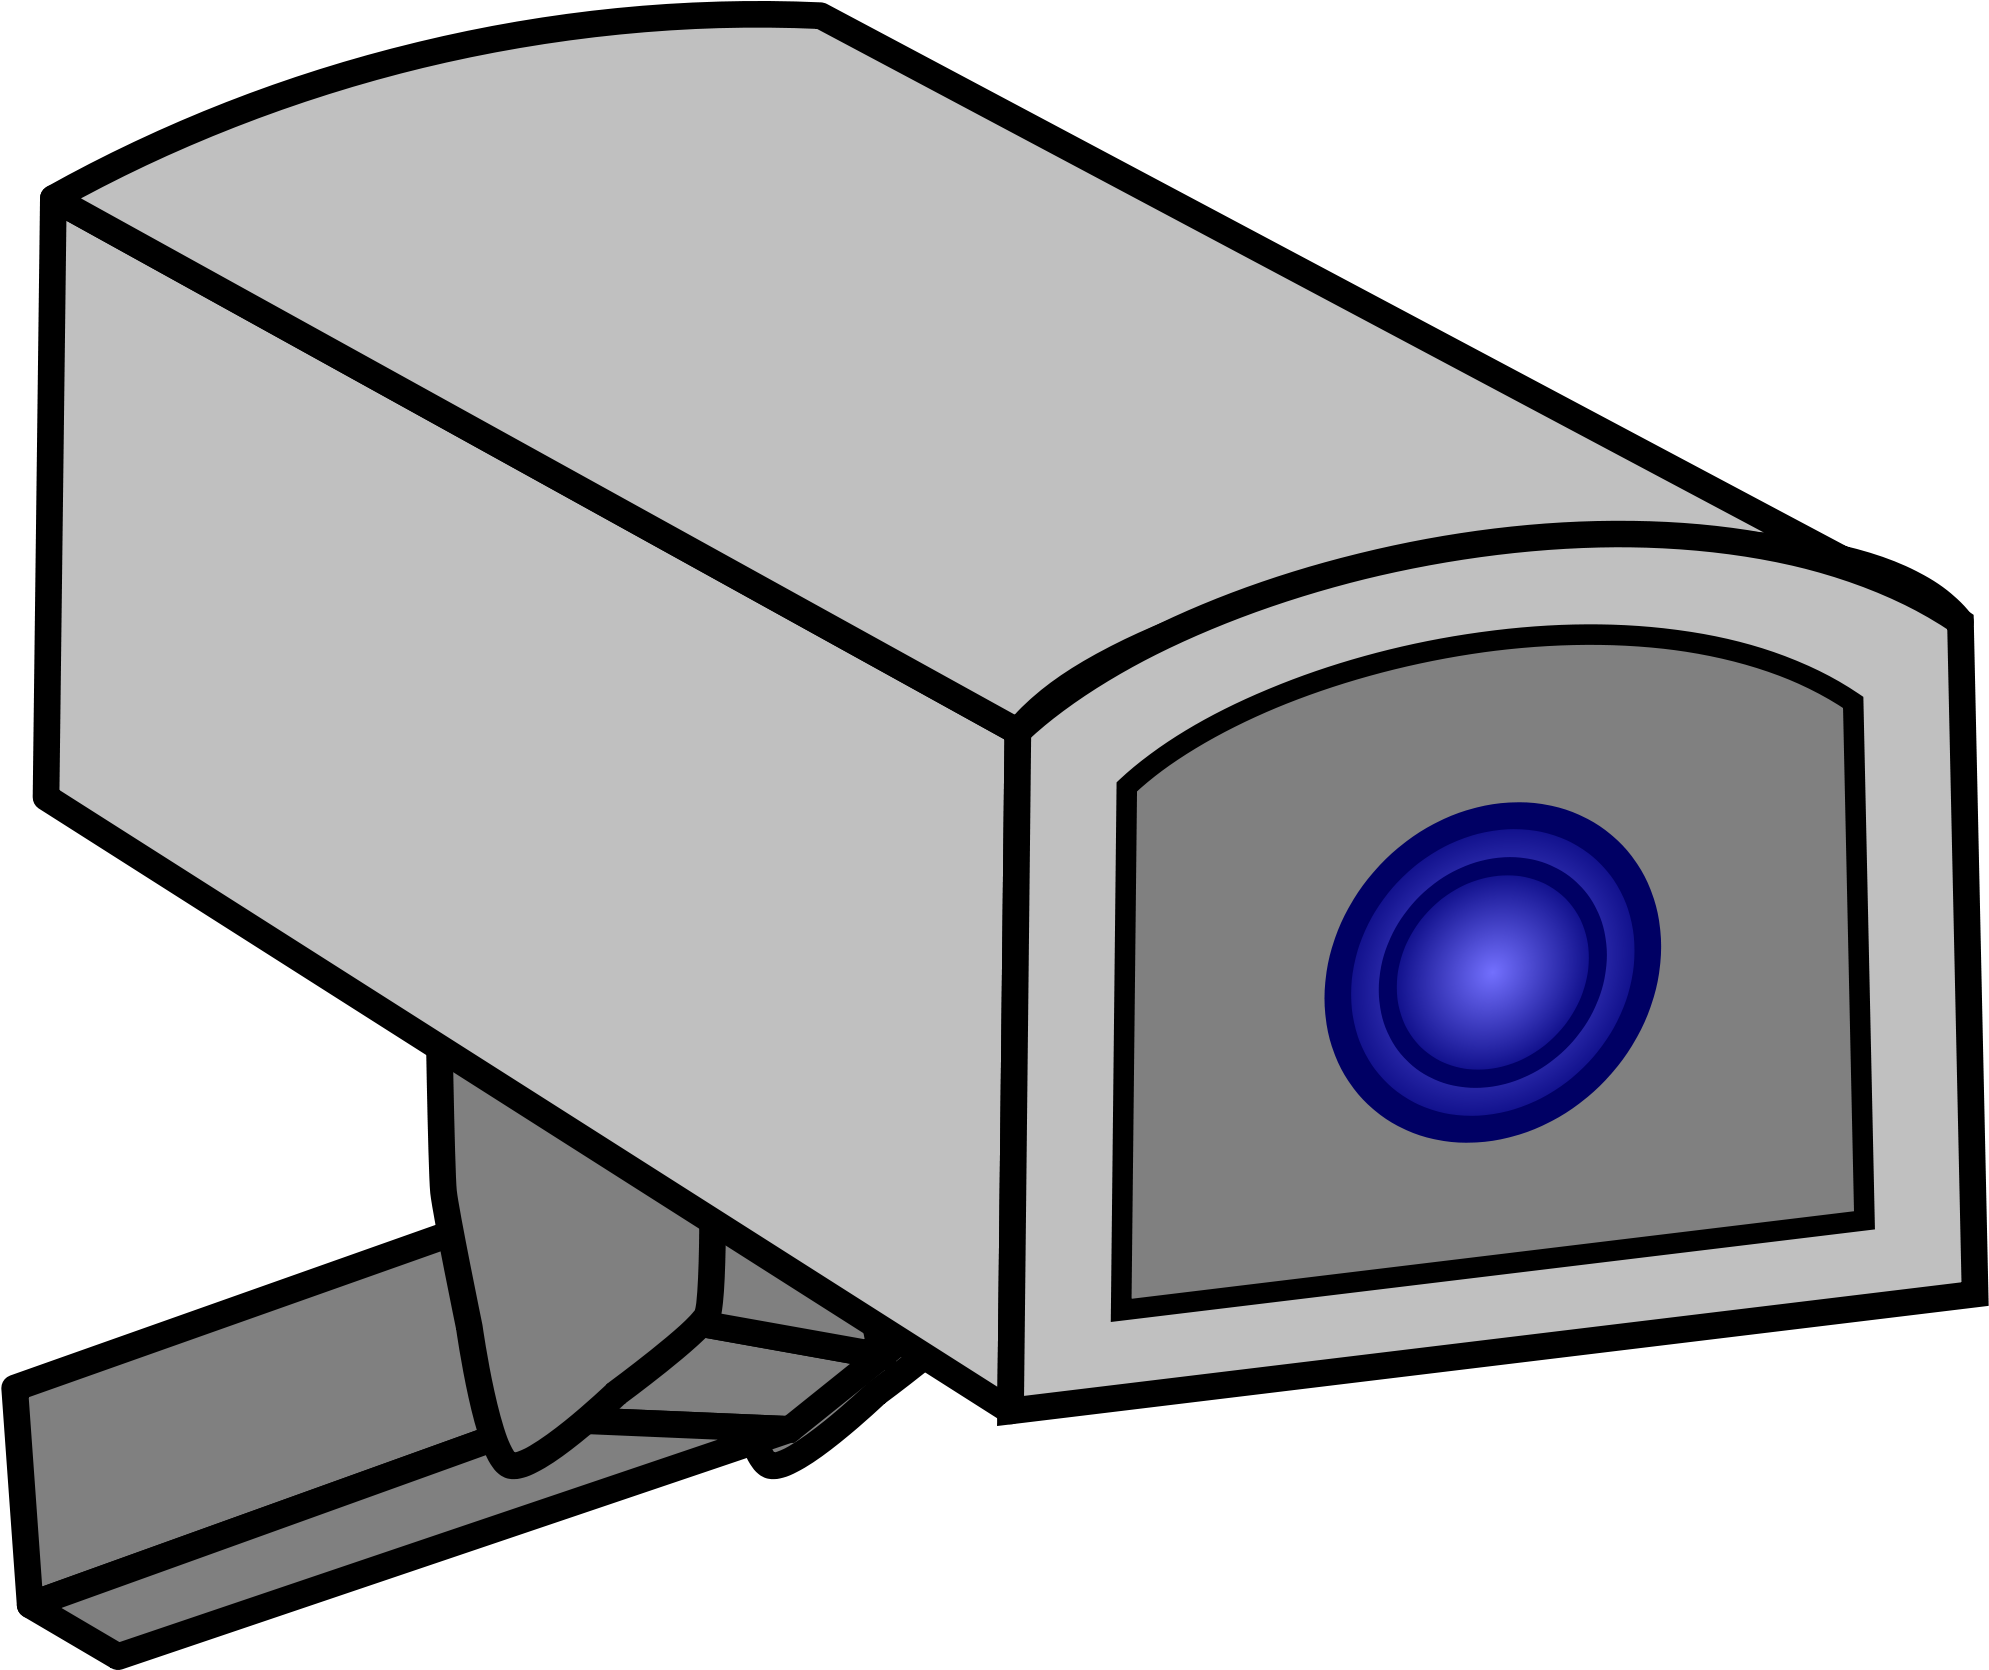 Drawing Of A Cctv Camera - Cctv Camera Drawing (2000x1724)